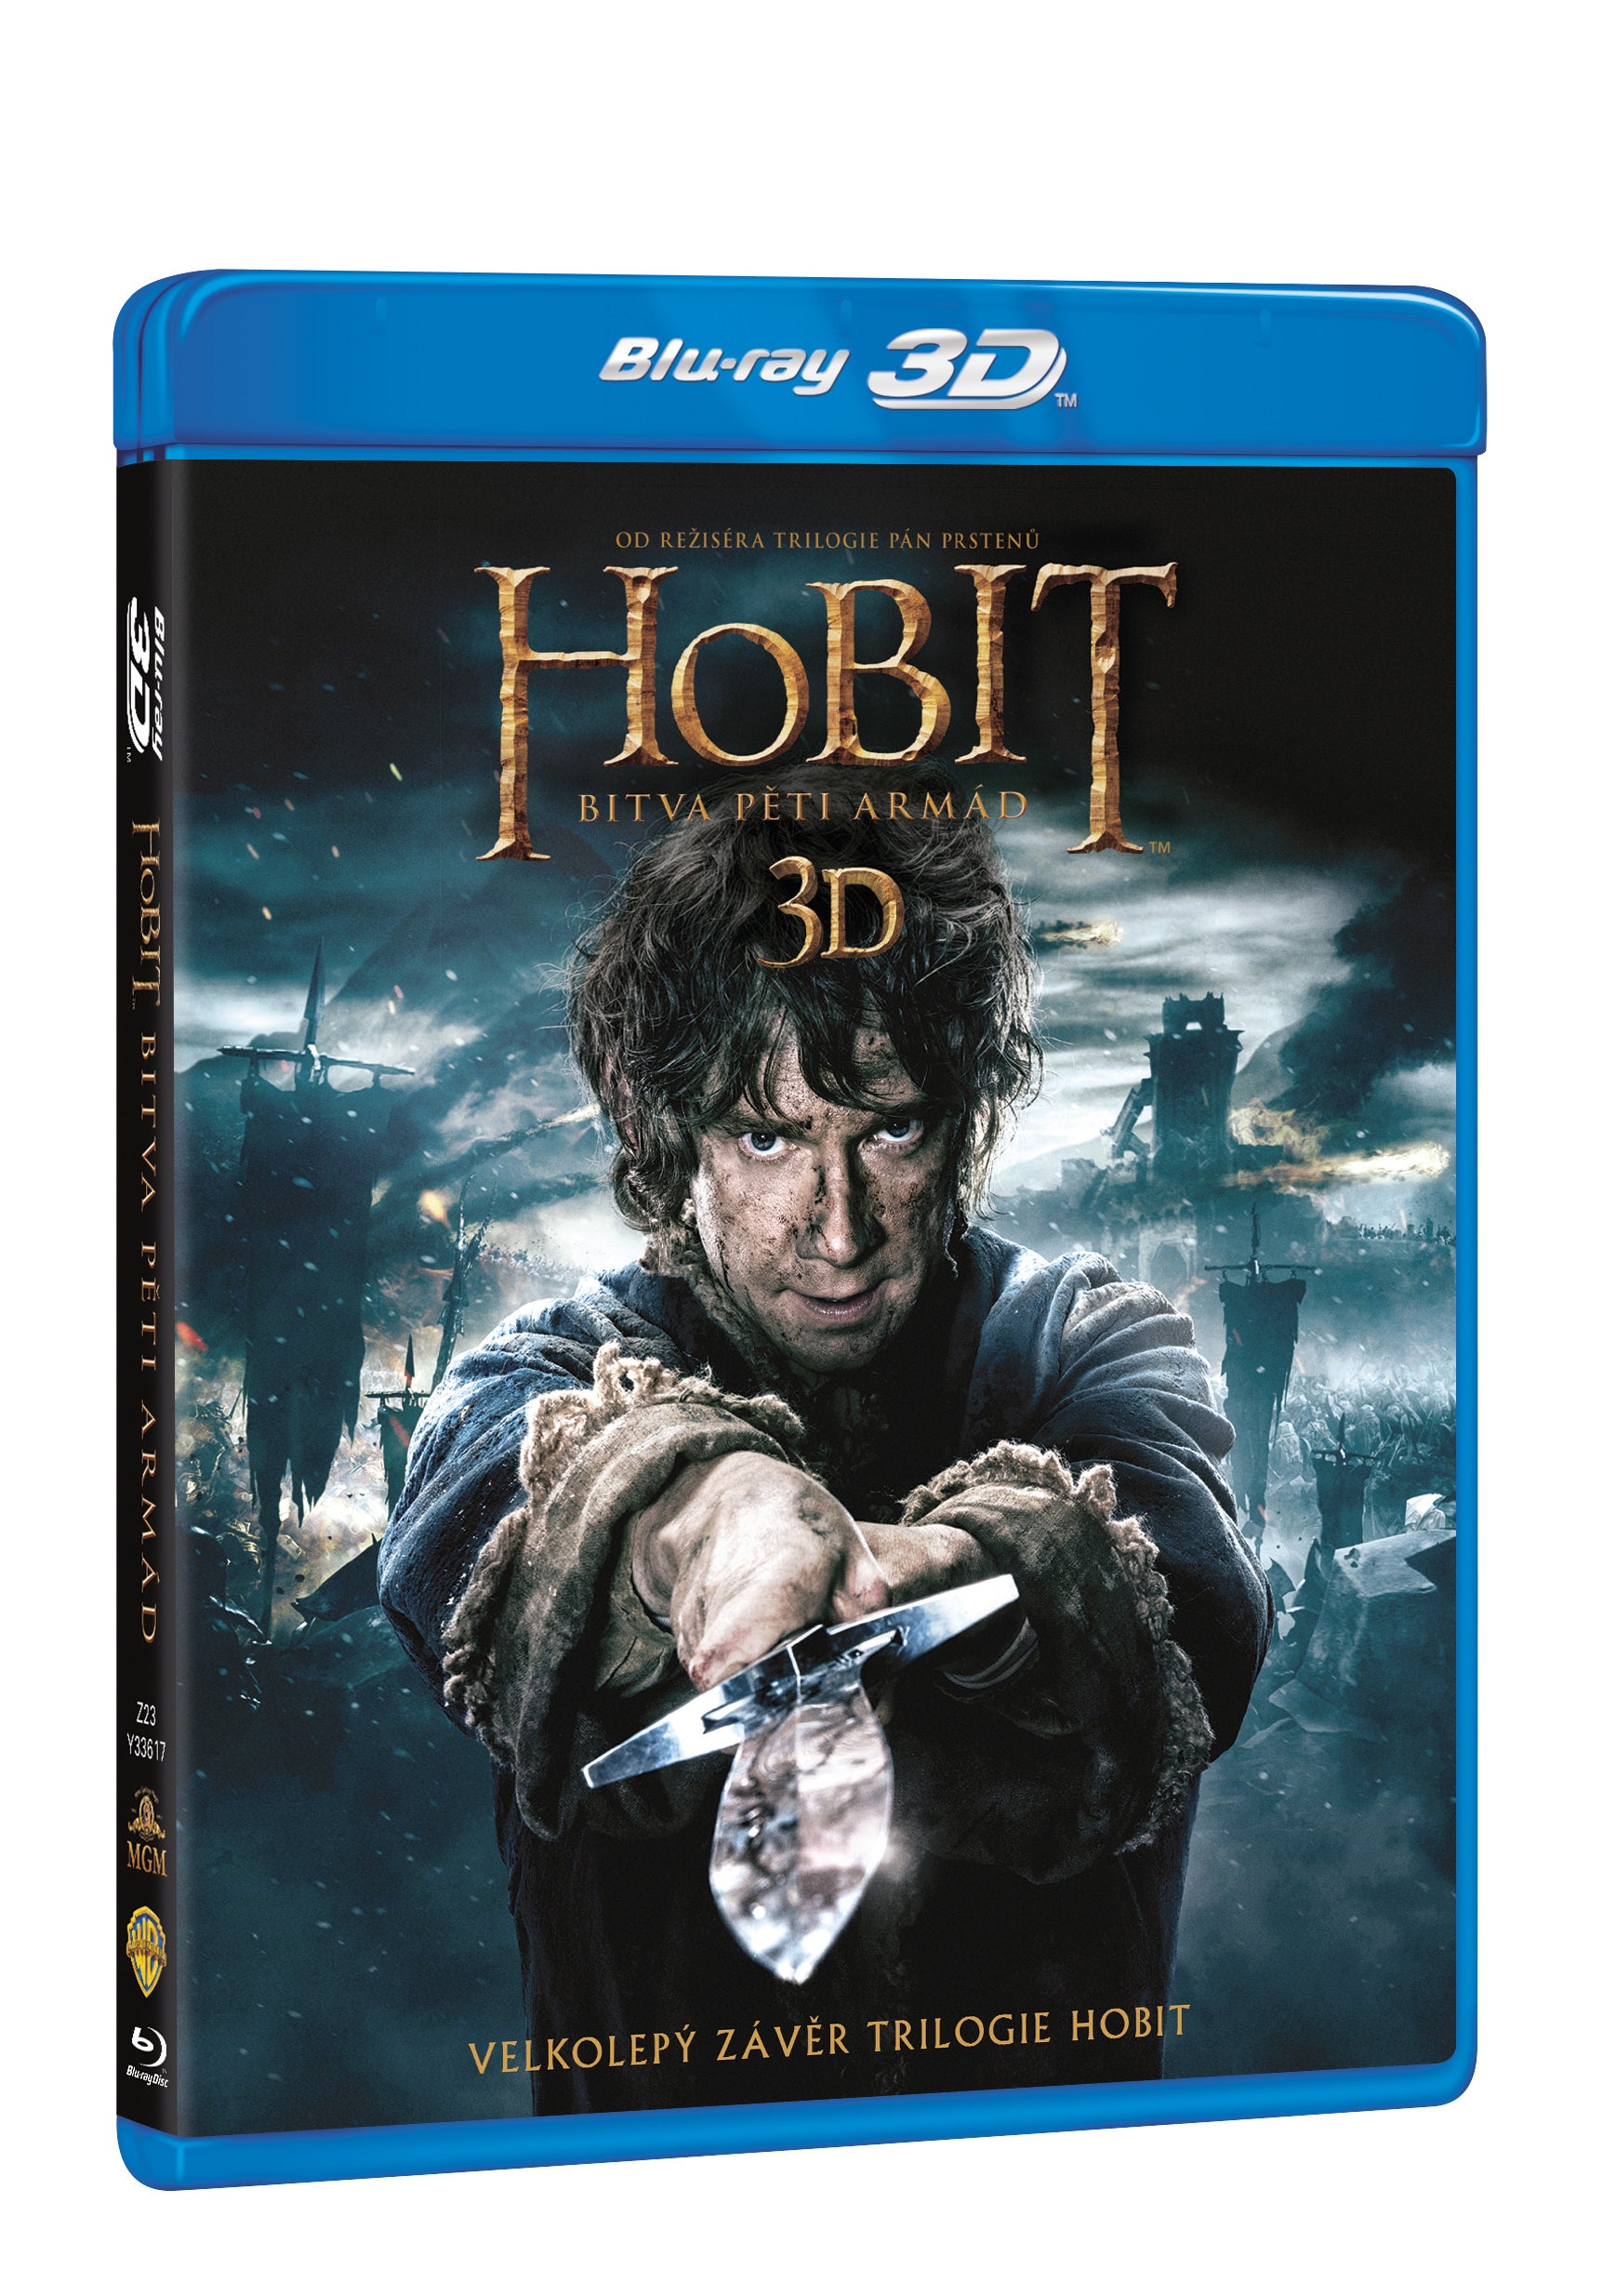 Hobit: Bitva peti armad 4BD (3D+2D) / The Hobbit: The Battle of the Five Armies - Czech version